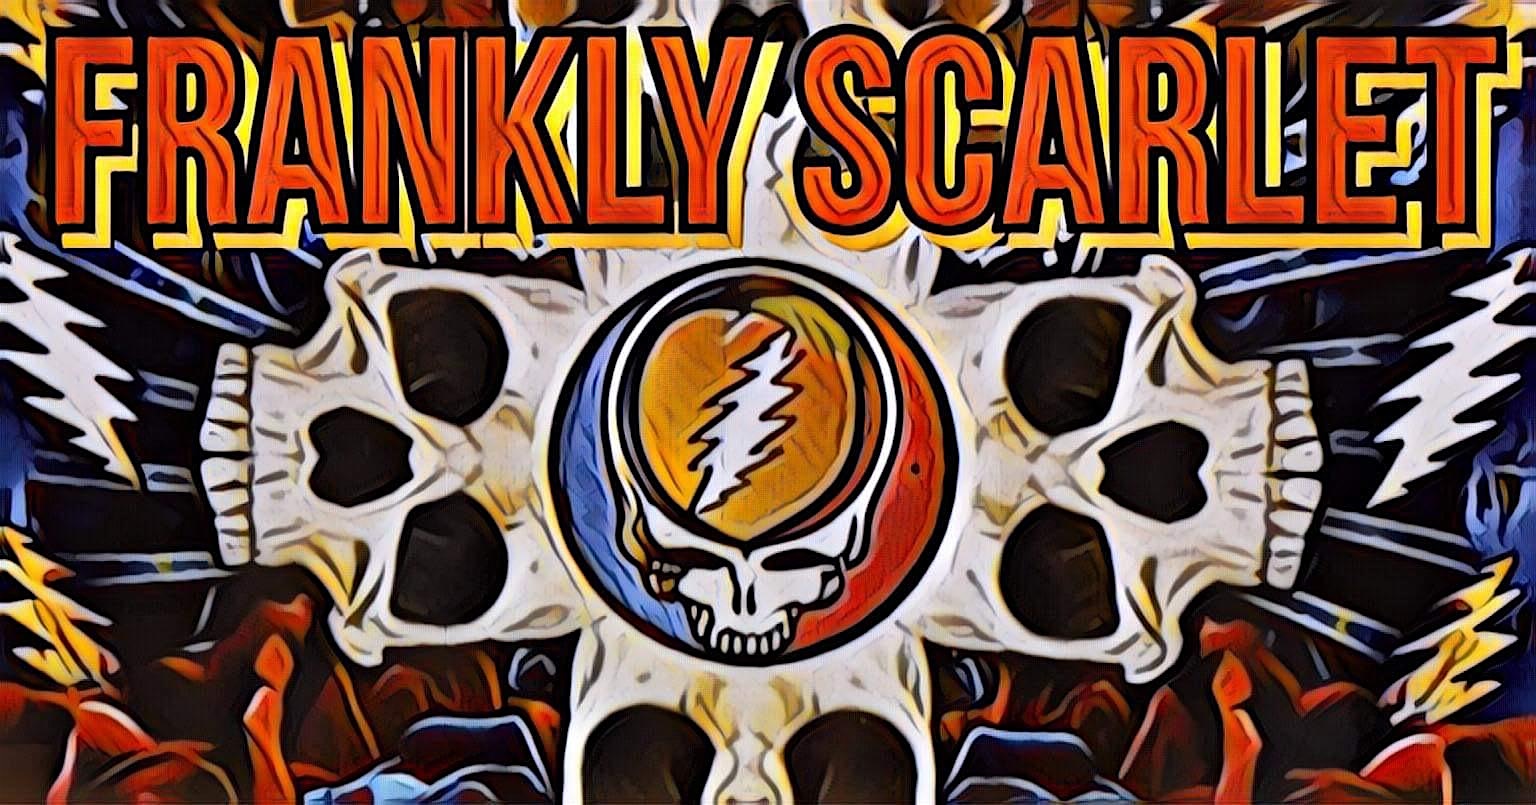 Frankly Scarlet – Grateful Dead Tribute